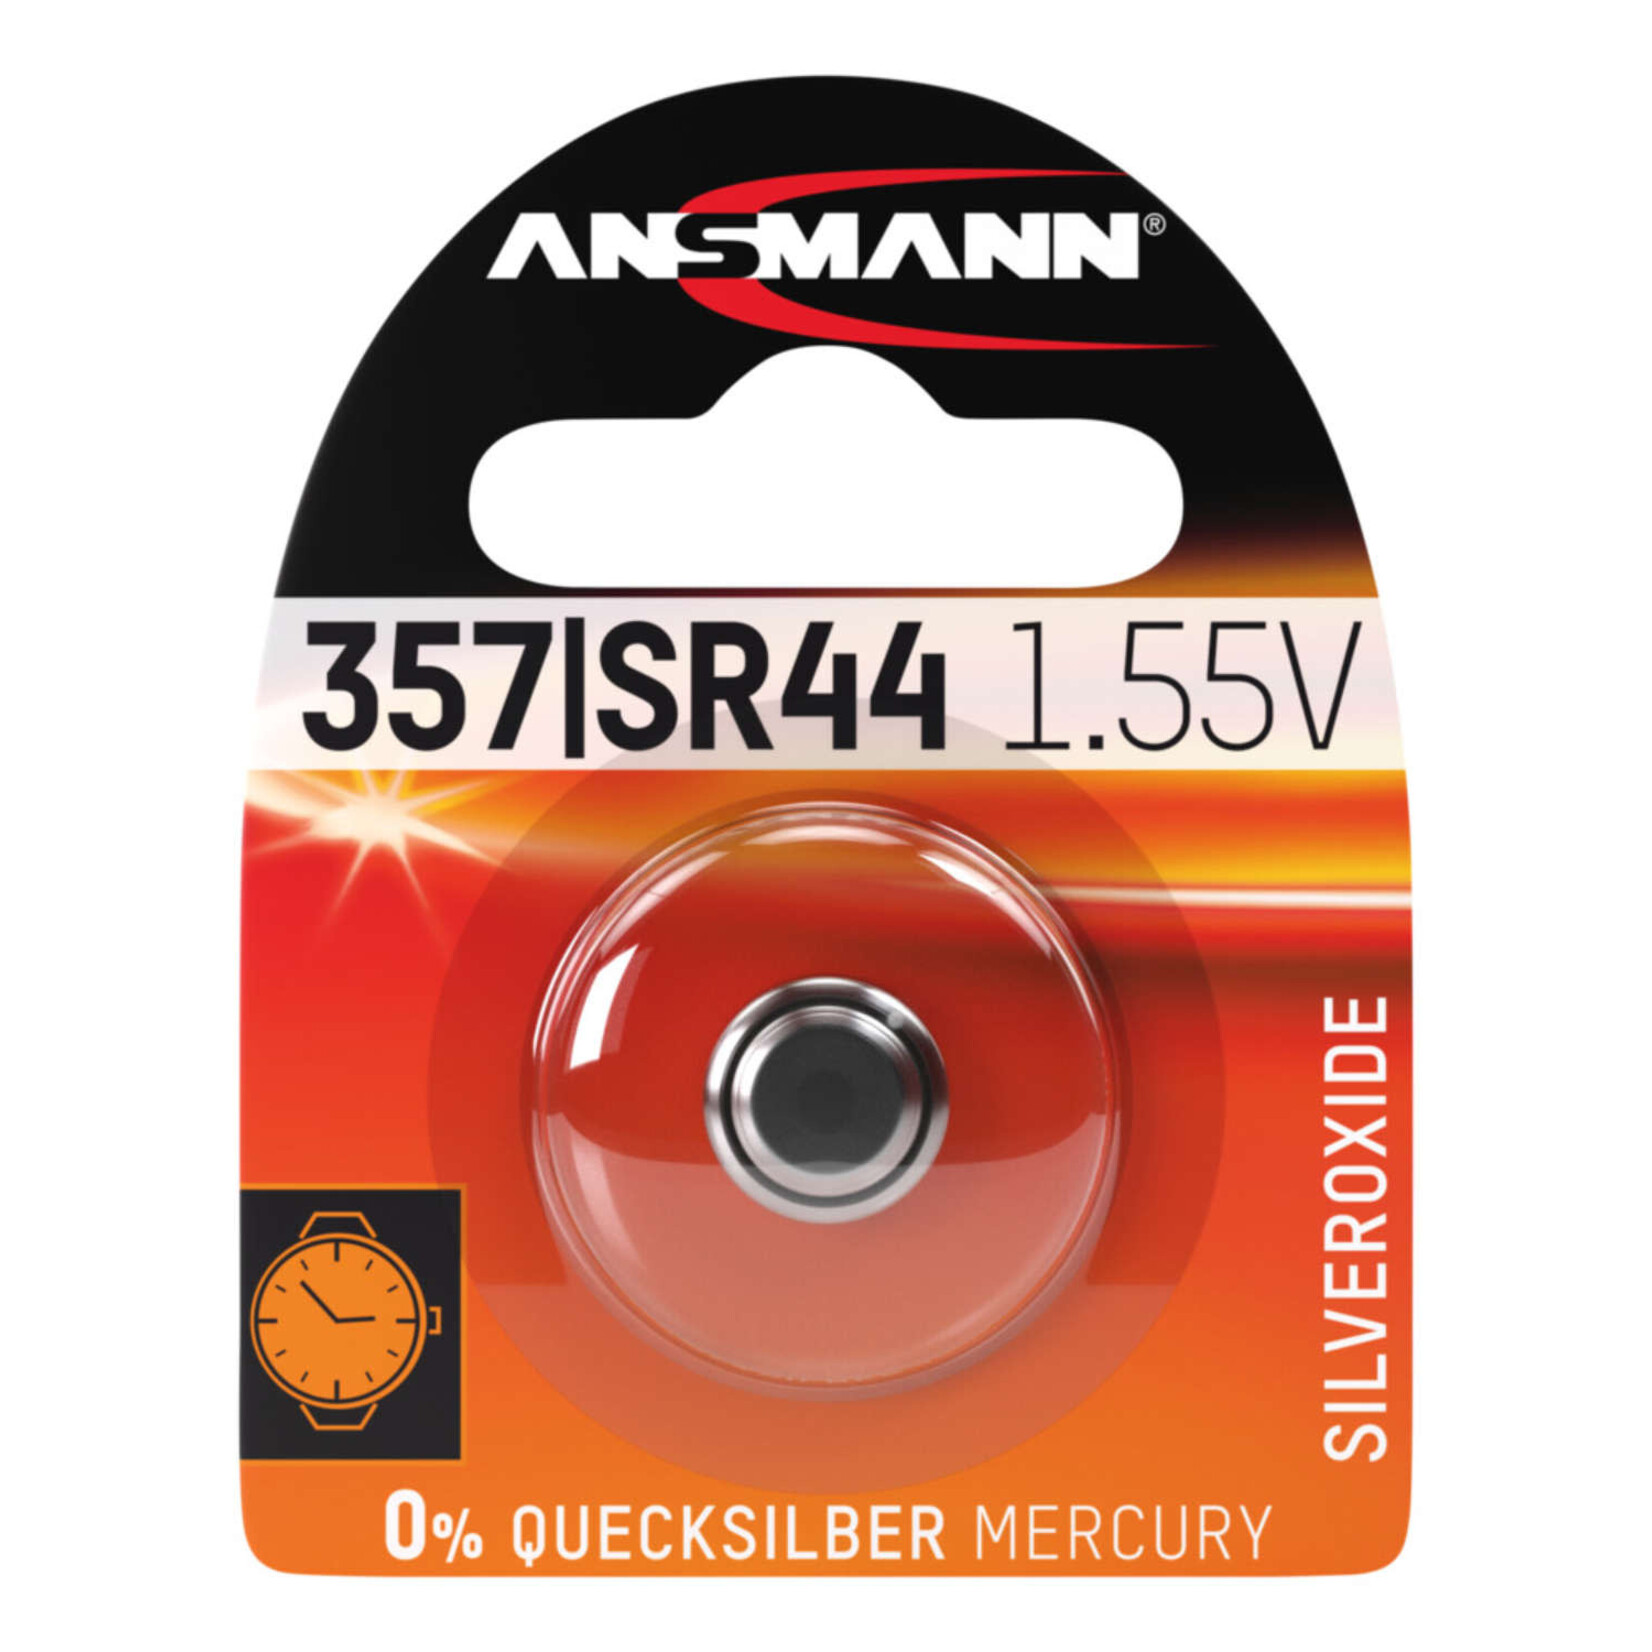 Ansmann Ansmann 357/SR44 1.55v Battery